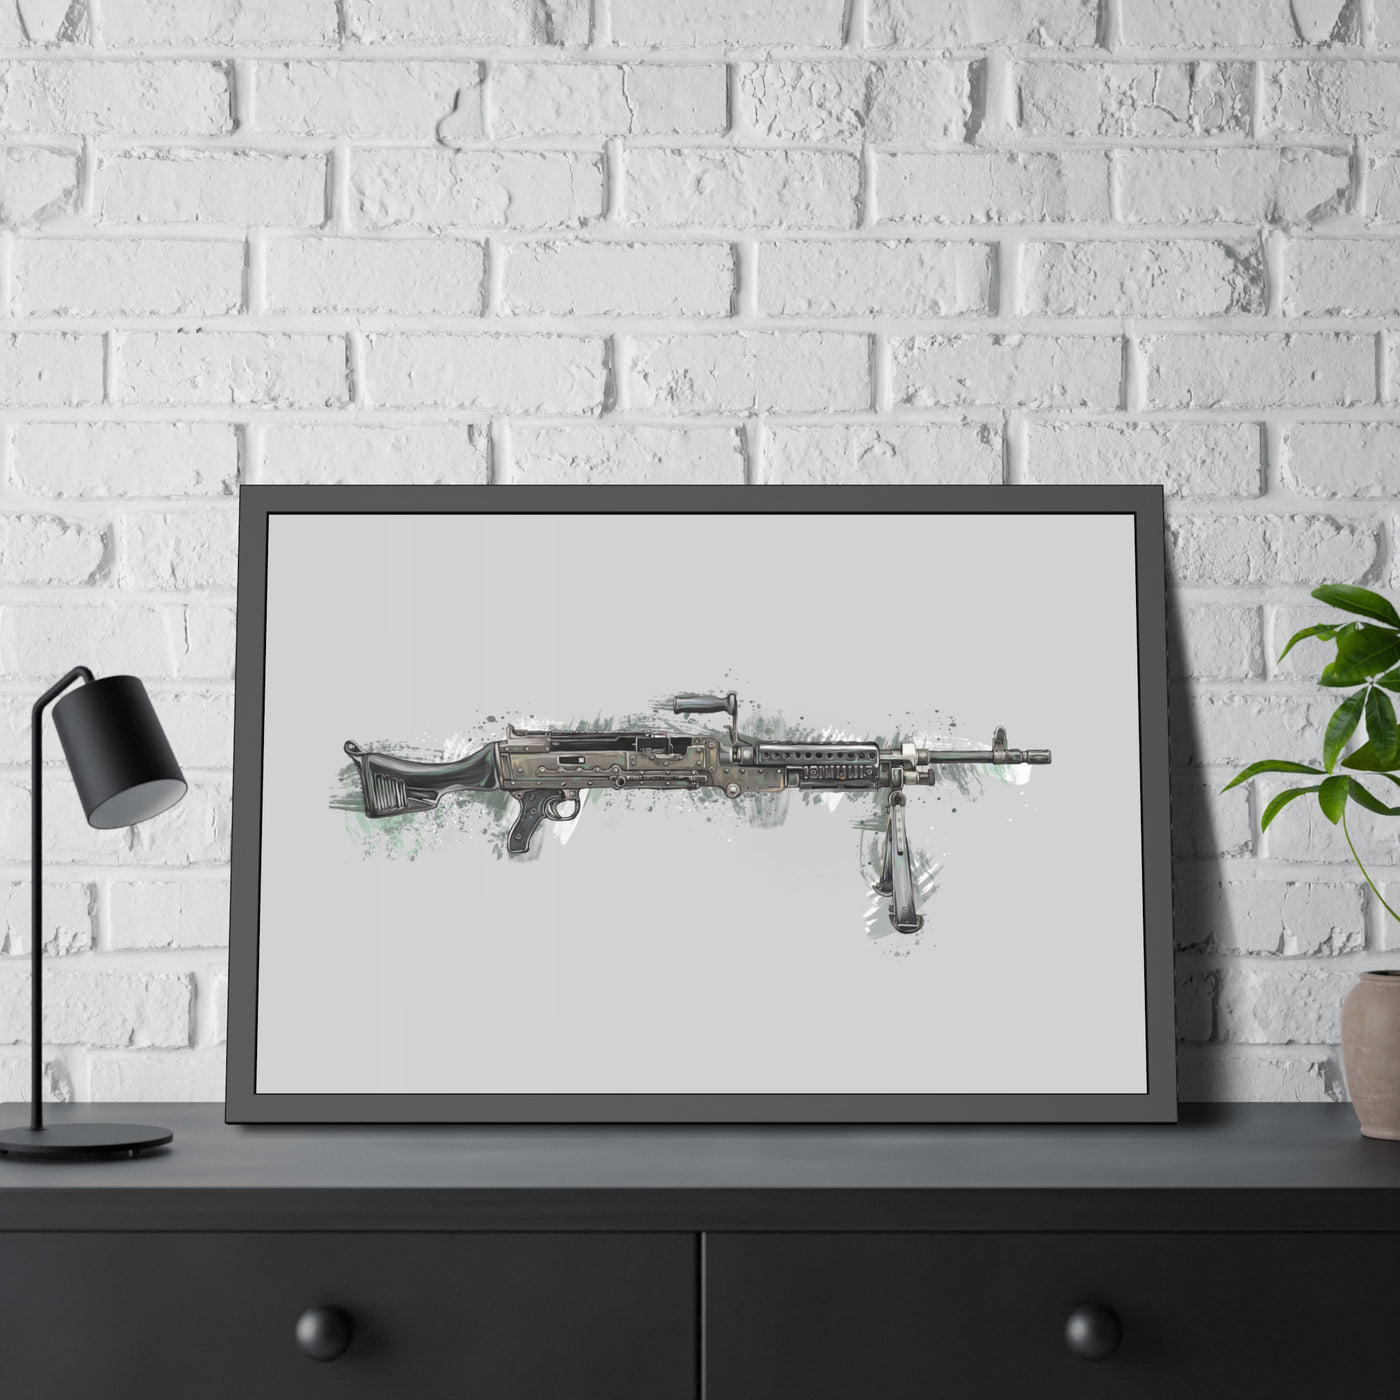 M240B - Belt Fed 7.62x51 Machine Gun - Grey Background - Black Frame - Value Collection